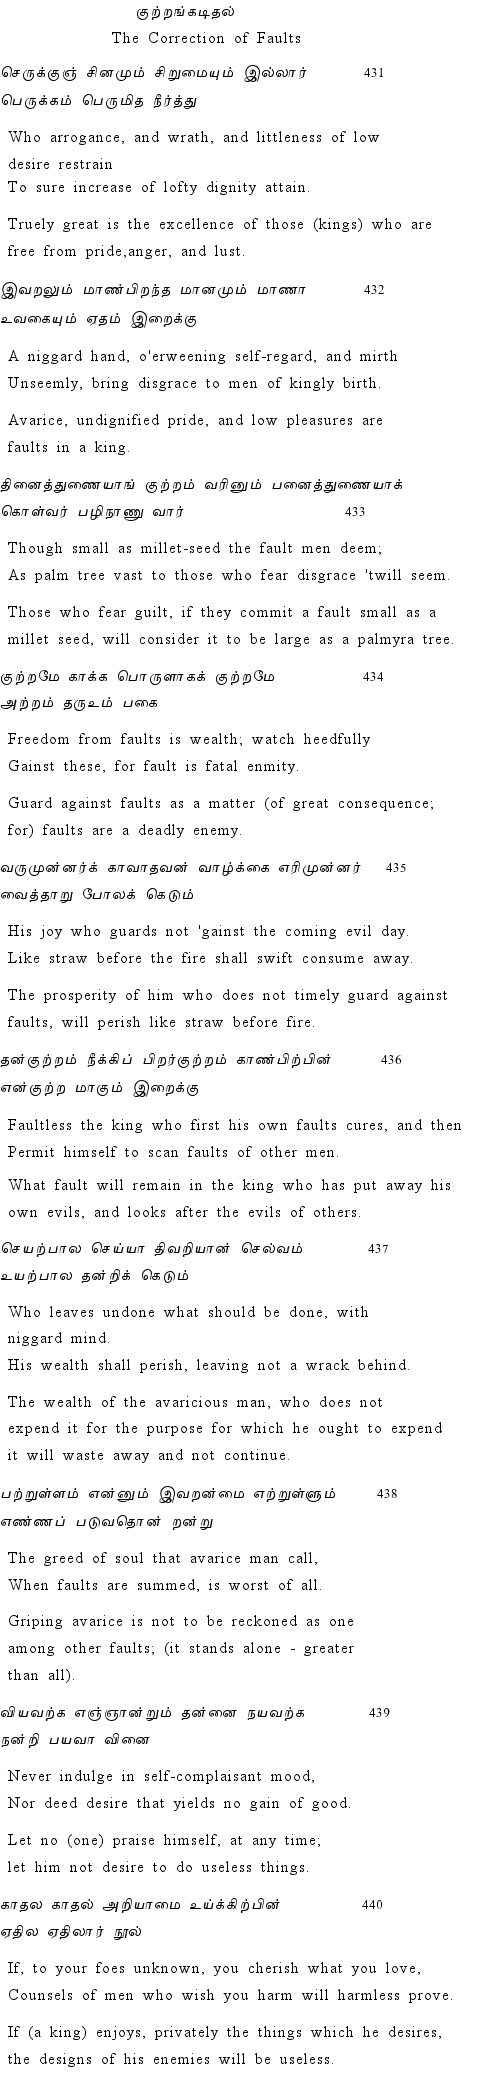 Text of Adhikaram 44